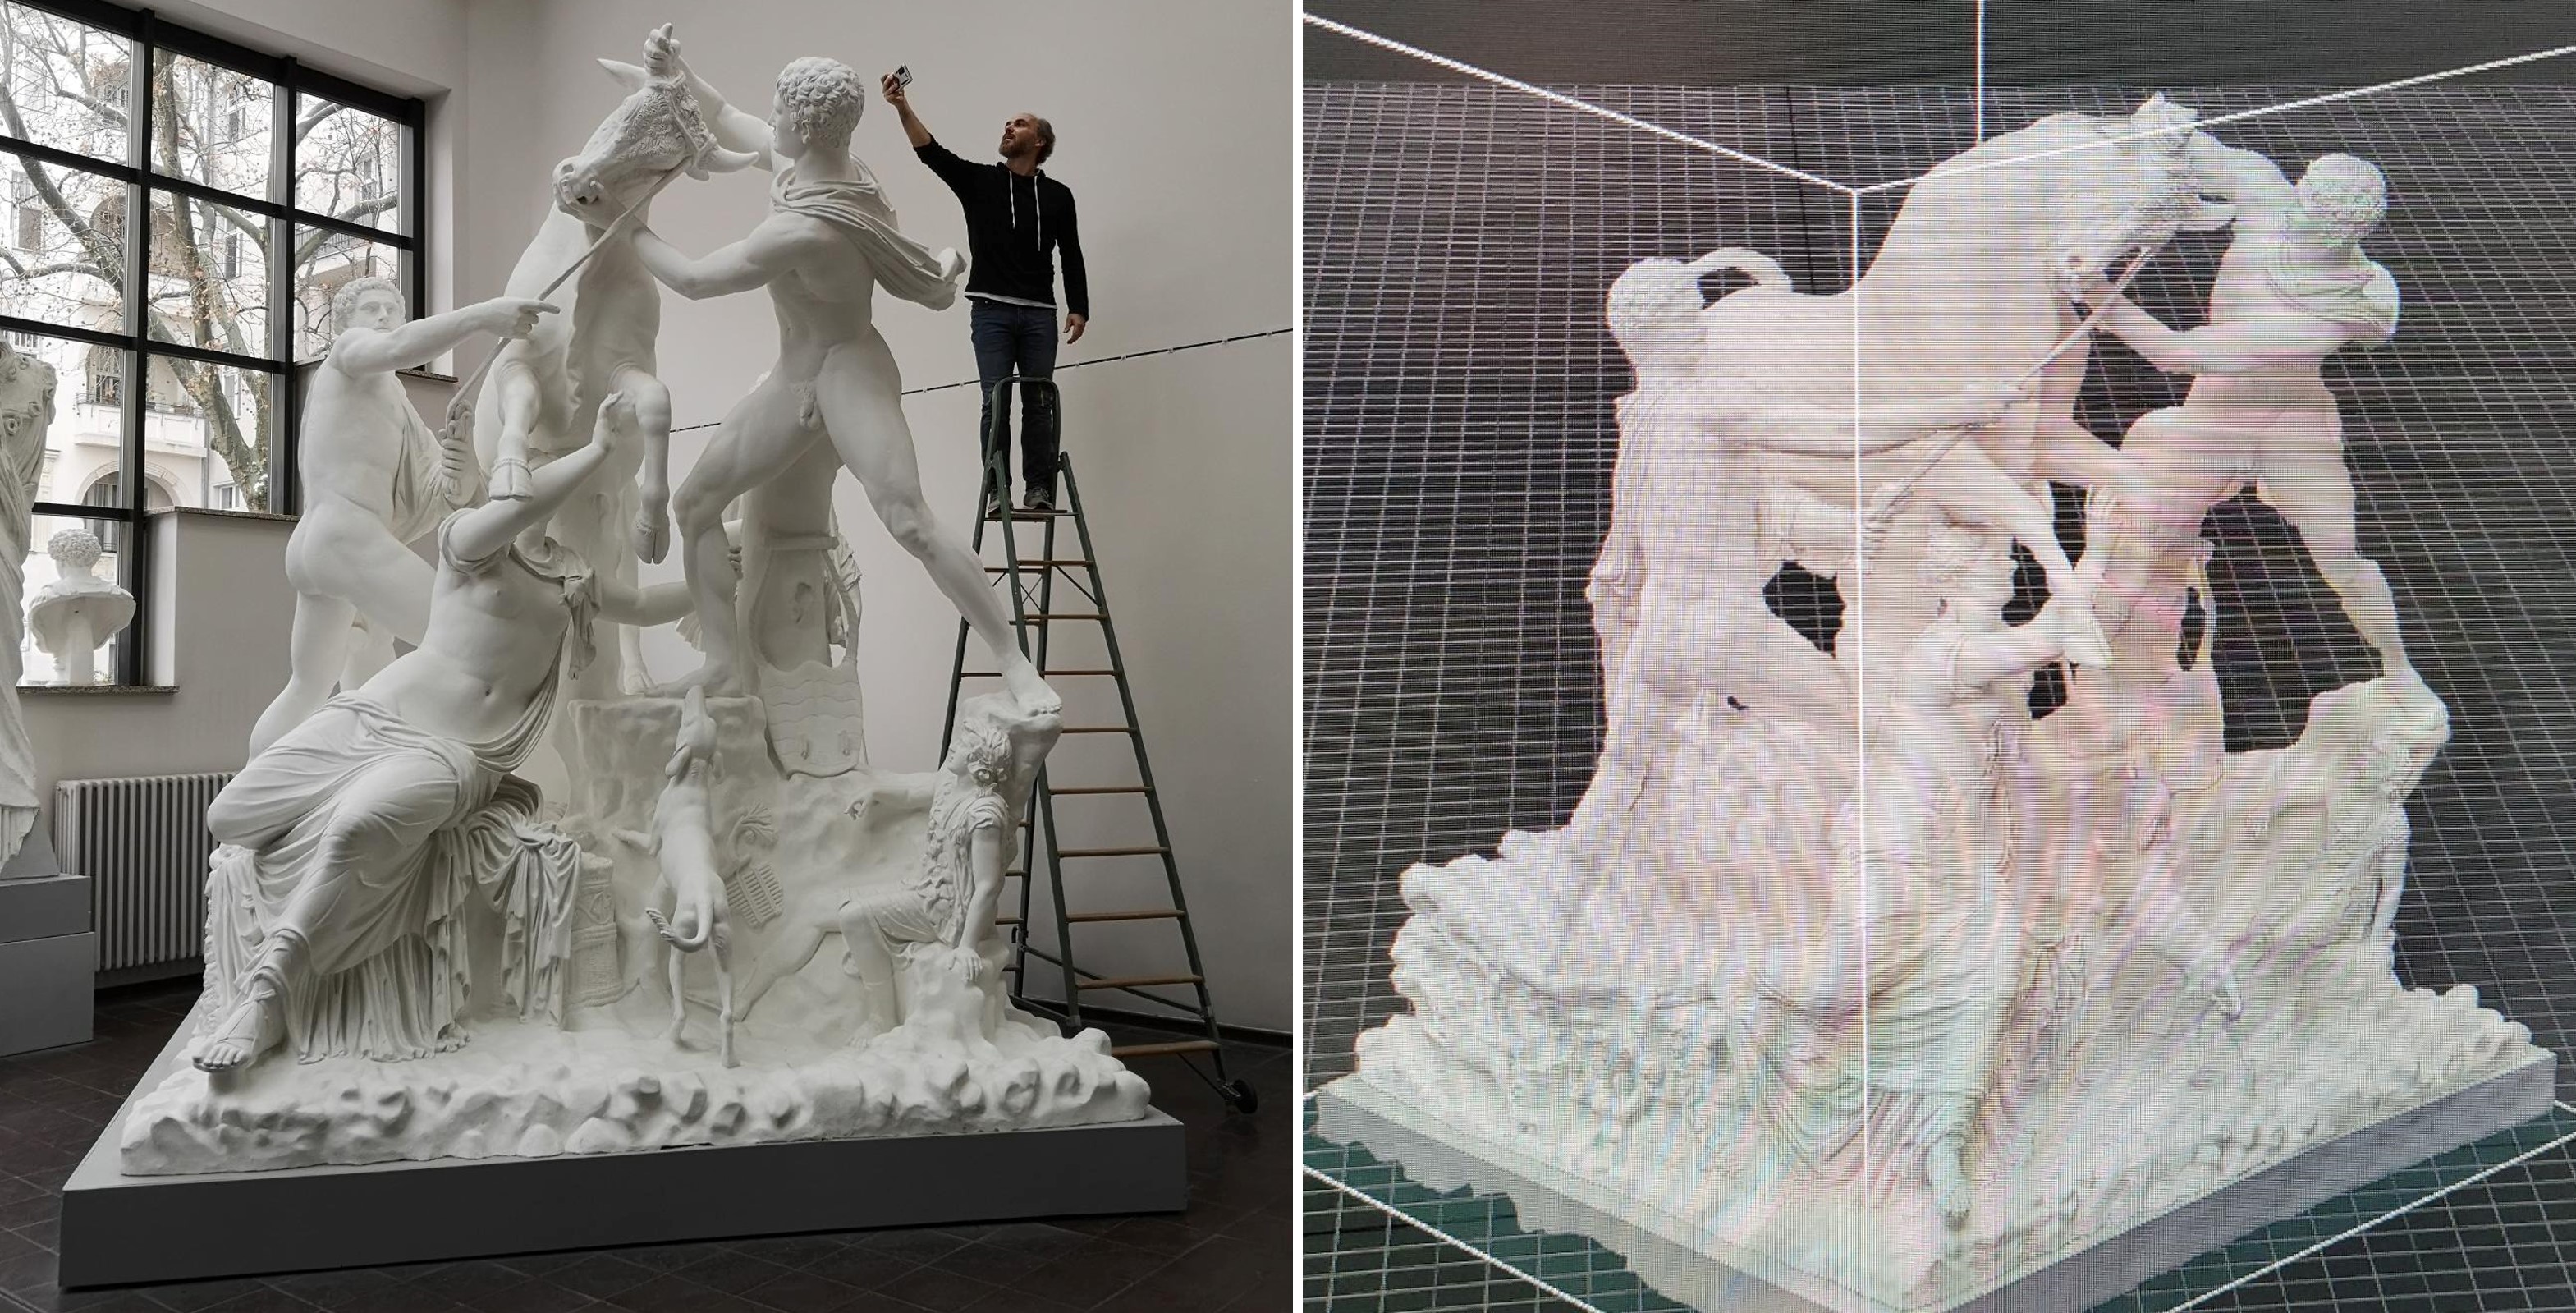 Linke Bildhälfte: eine etwa 3 Meter hohe weiße Skulptur. 2 Männer und eine Frau, die mit einem Stier ringen. Daneben Prof.. Block-Berlitz auf einer Leiter, der von schräg oben ein Bild macht. Rechte Bildhälfte: digitales Abbild der Skulptur